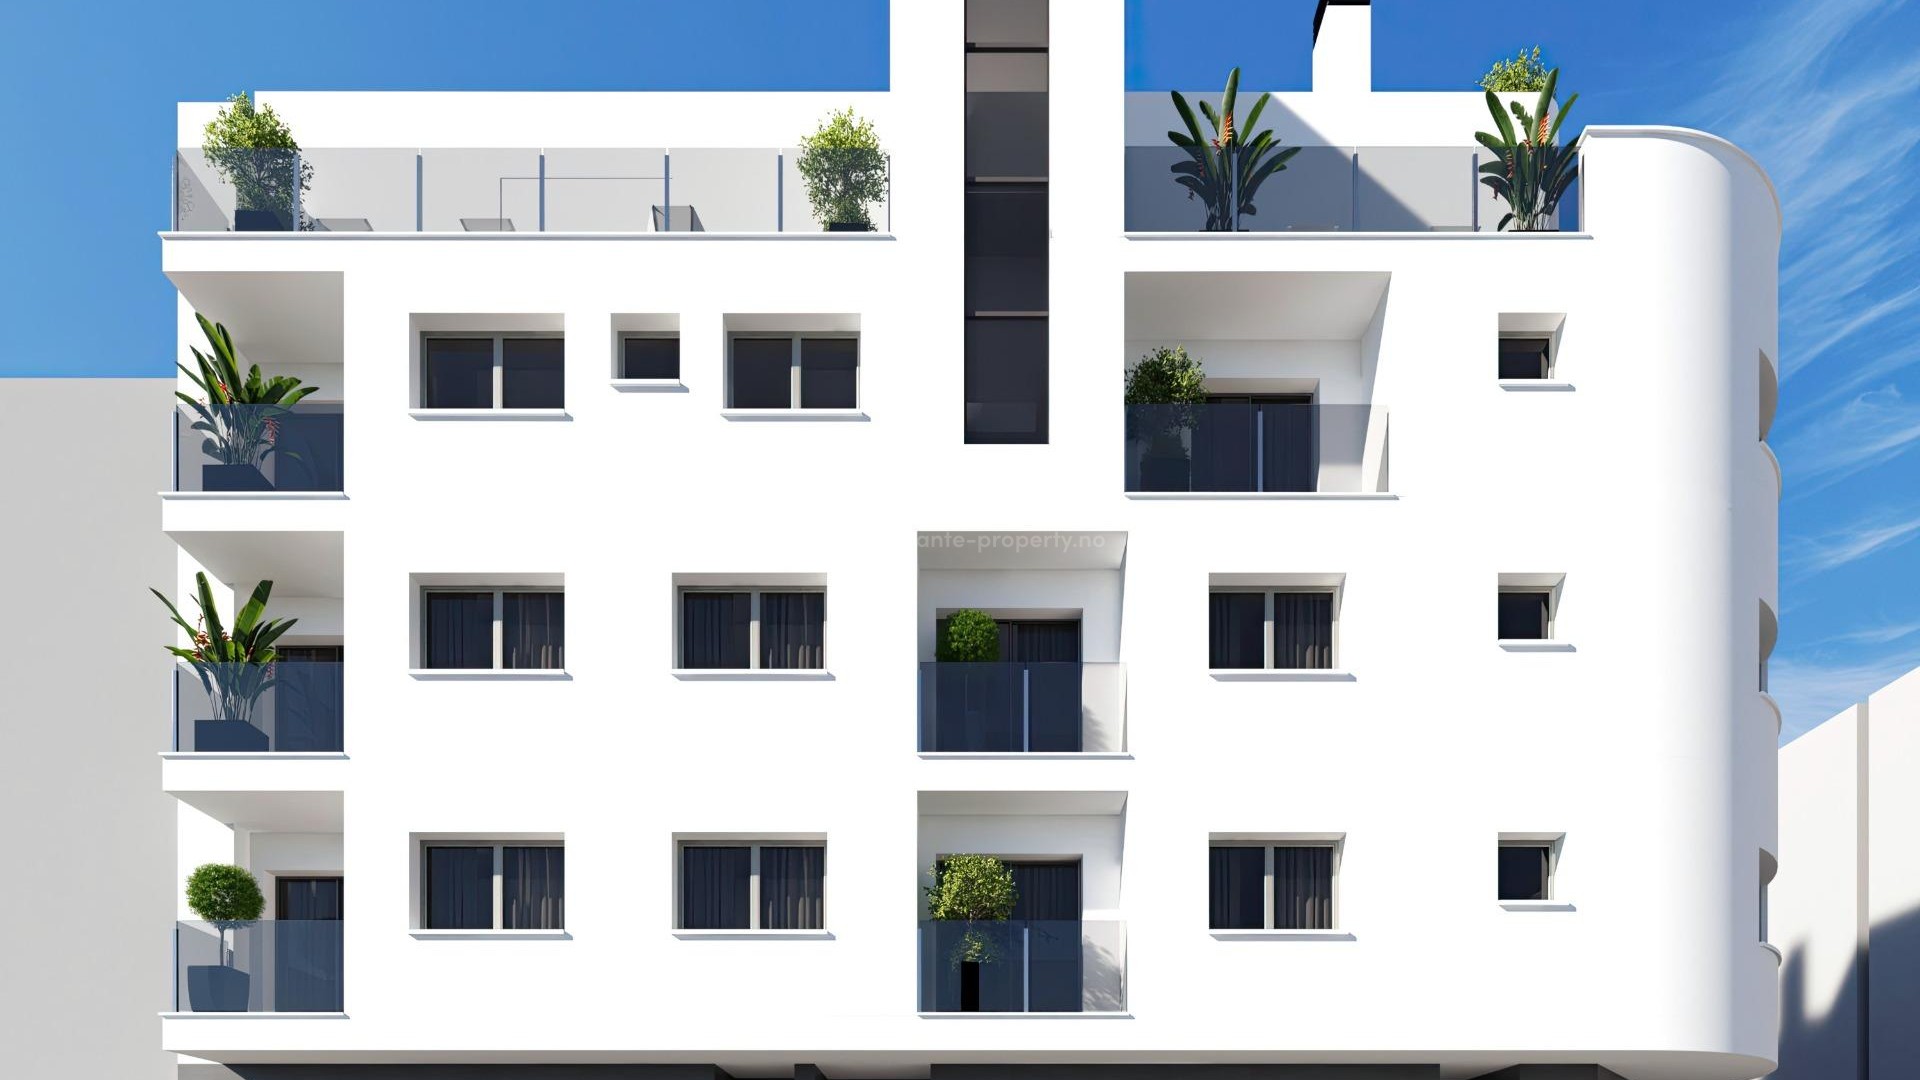 Nye moderne leiligheter  med finish av høy kvalitet i Torrevieja,1/2 soverom, 1/2 bad, åpen kjøkkenløsning og stue, et vakkert felles solarium